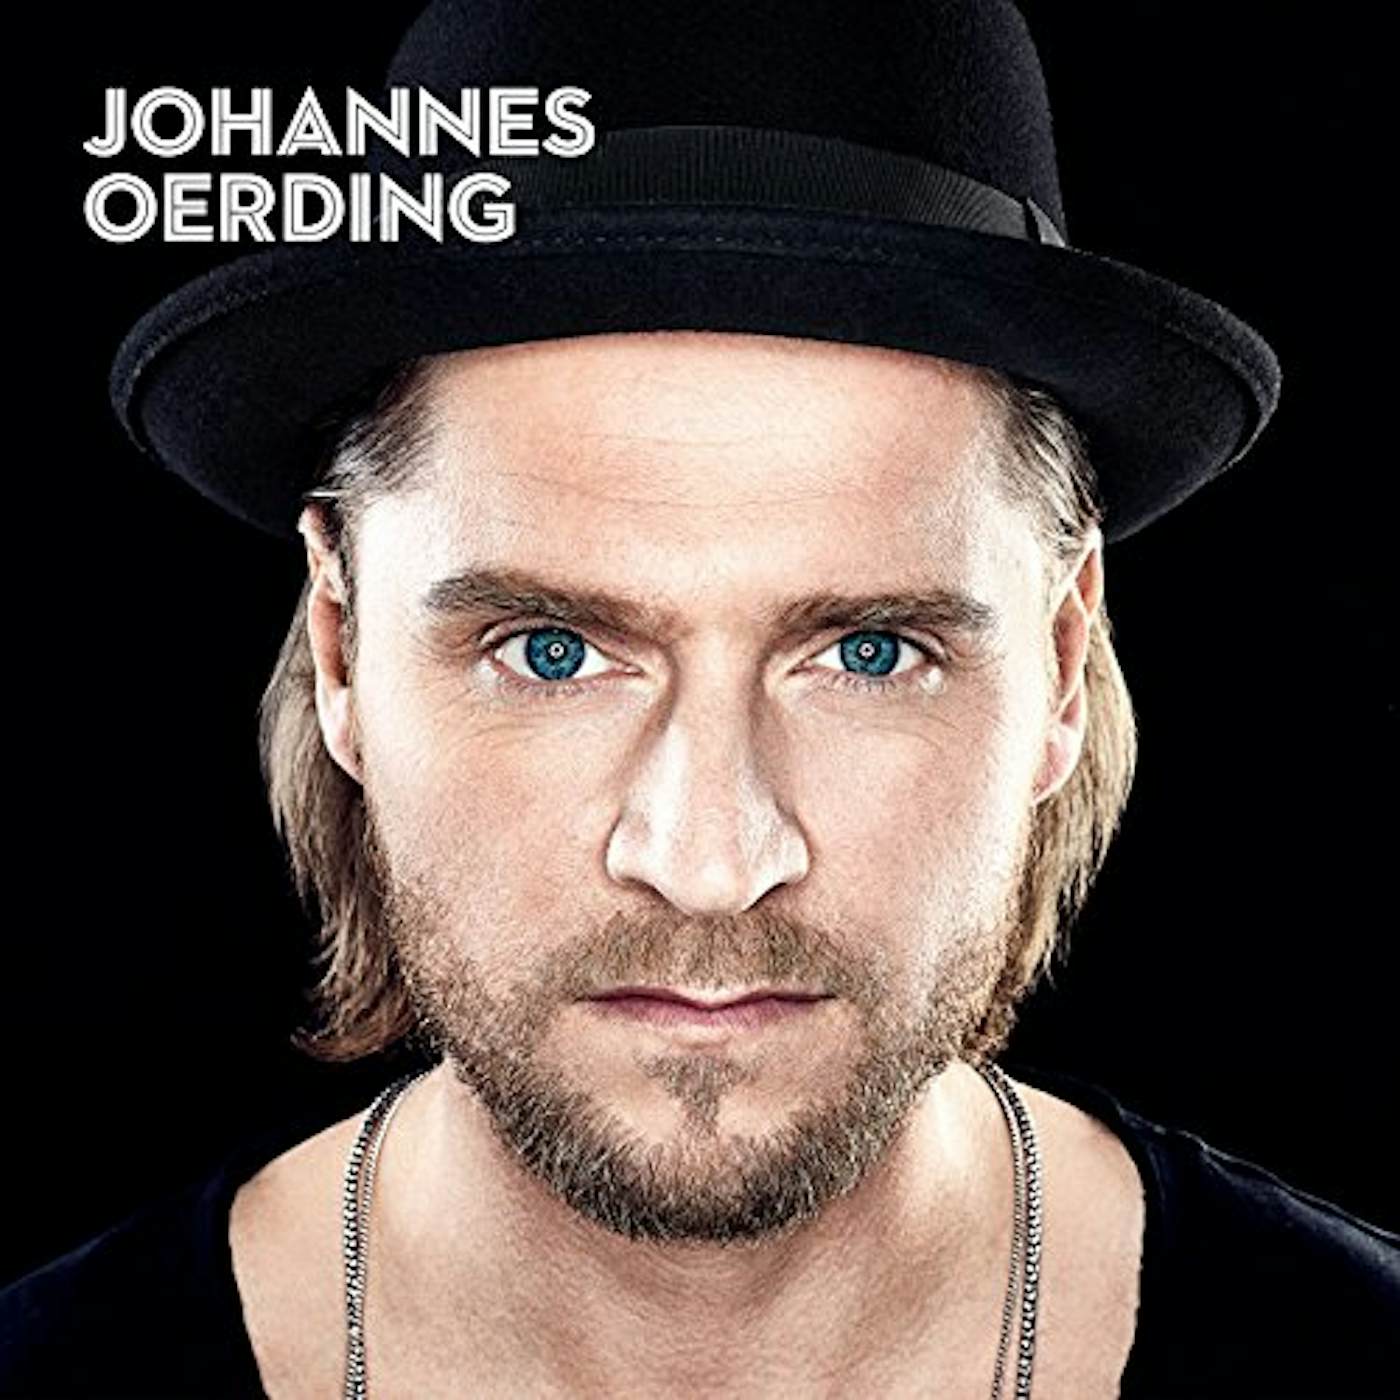 Johannes Oerding KREISE CD